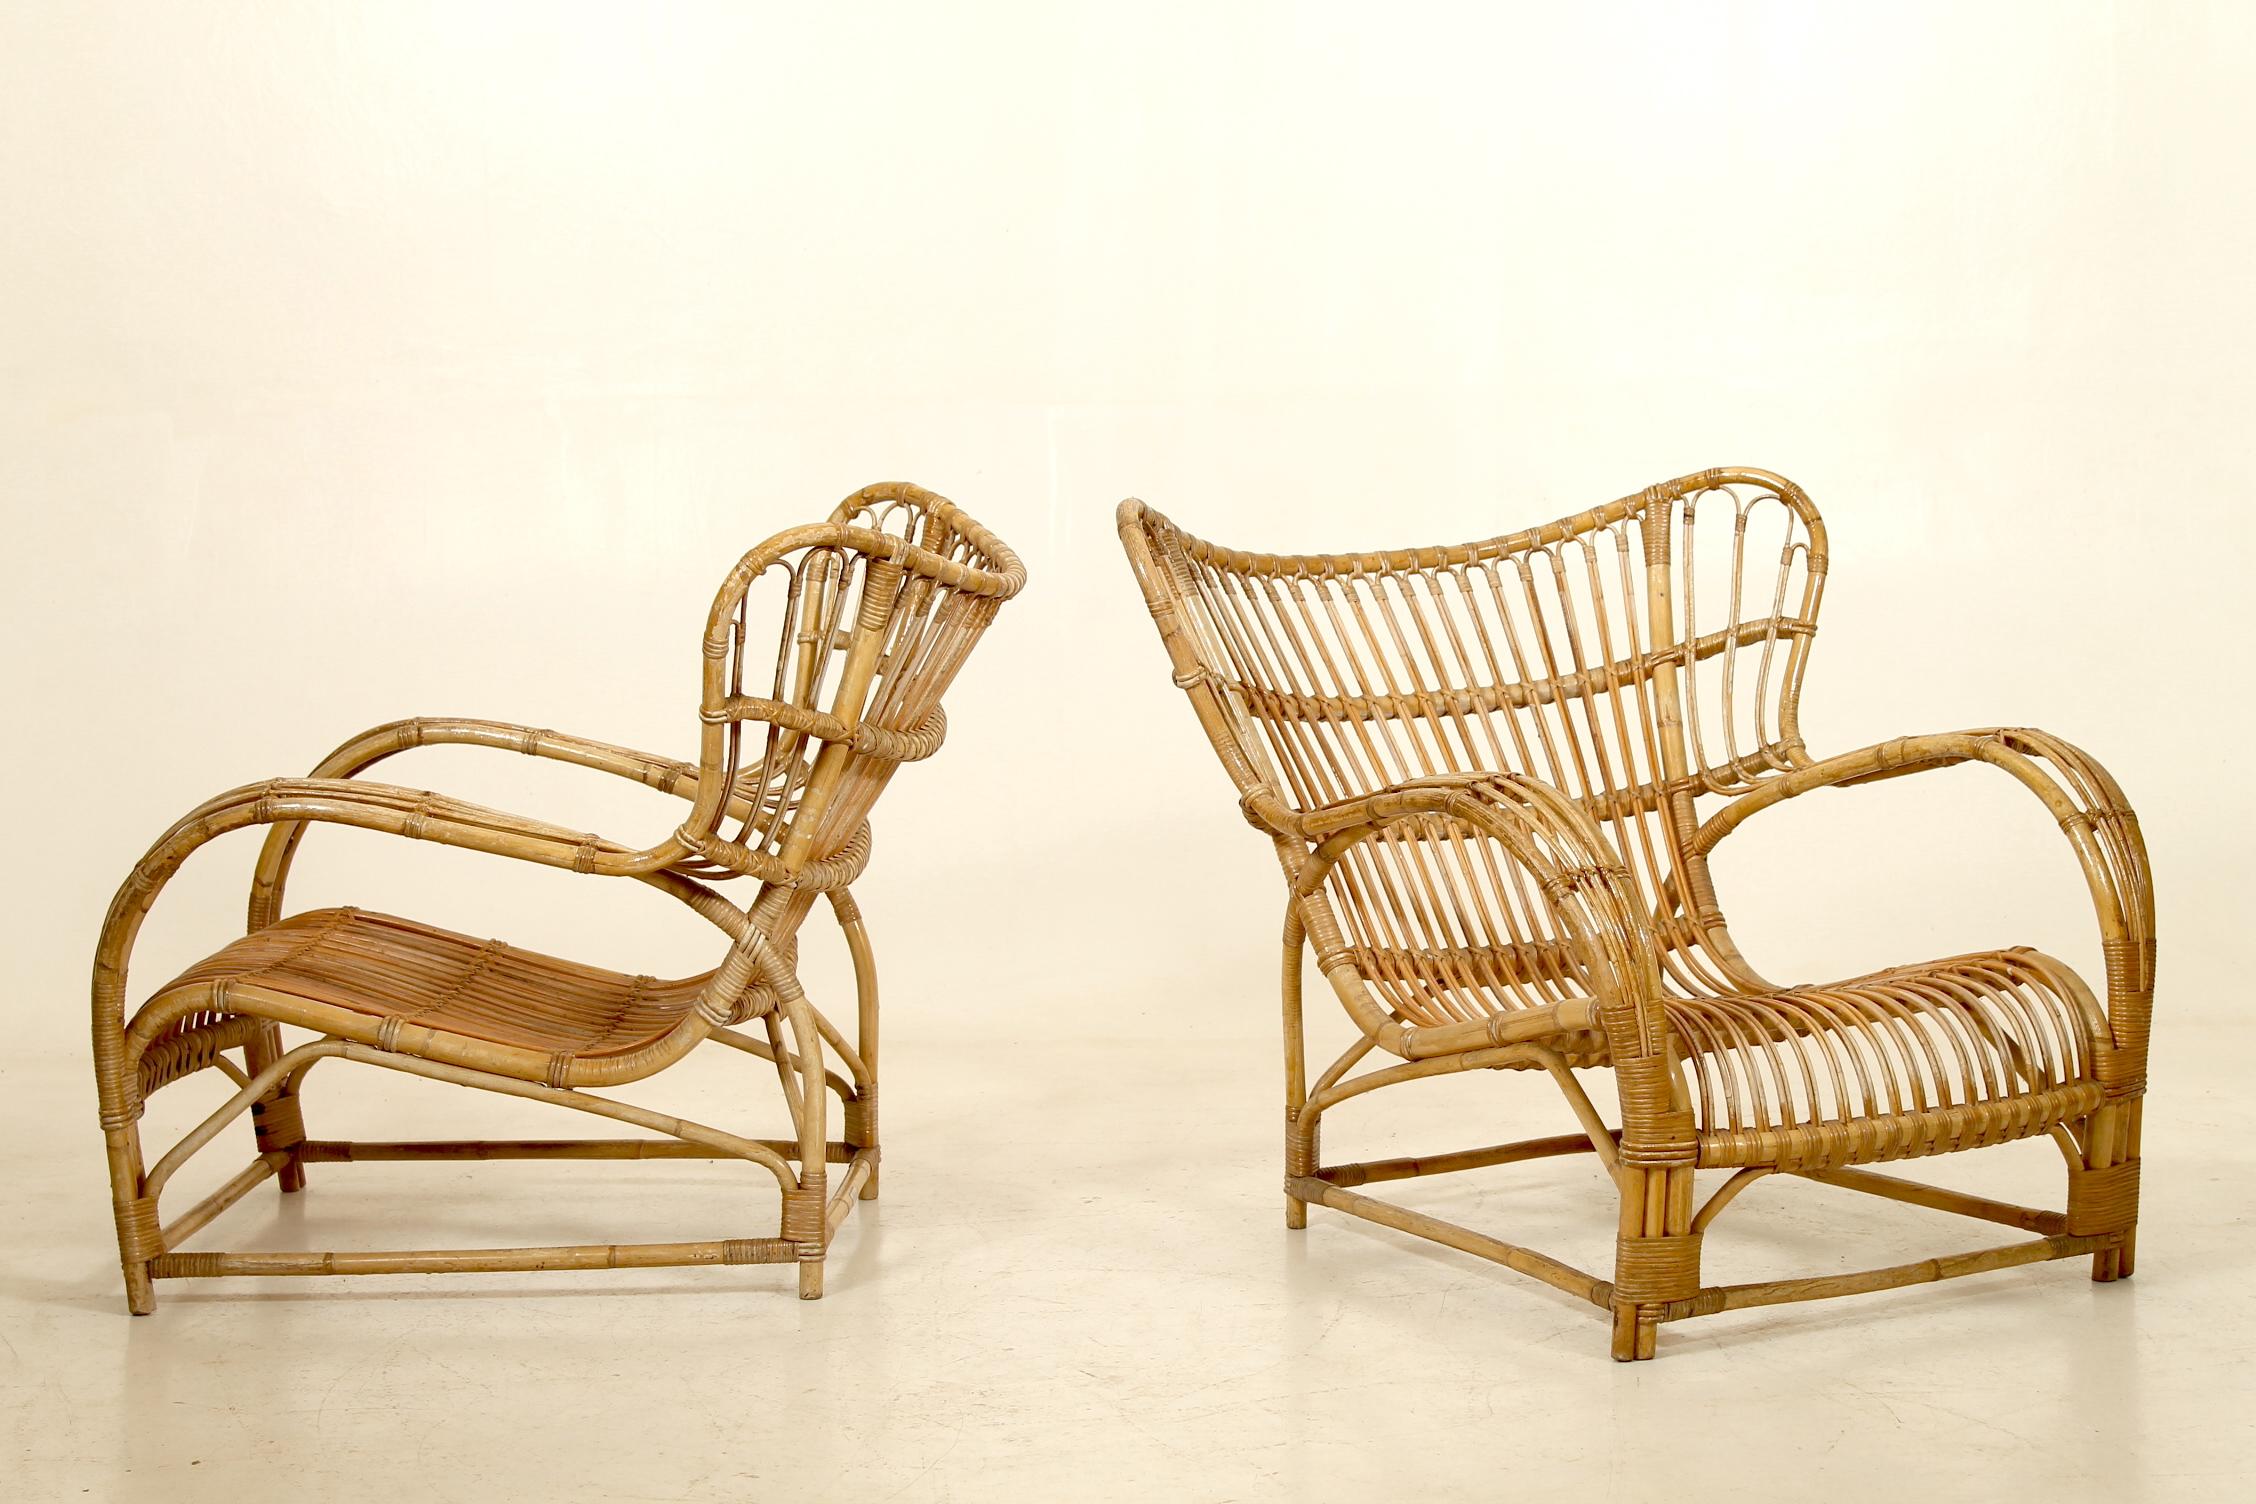 Une rare paire, dont un tabouret, de chaises longues modèle VB 136 par Viggo Boesen pour V.I.I. Nissen & Co, Danemark. Cette chaise en bambou a été conçue en 1936 et porte encore les étiquettes de Nissen. Le tabouret mesure 50x35x48 cm.